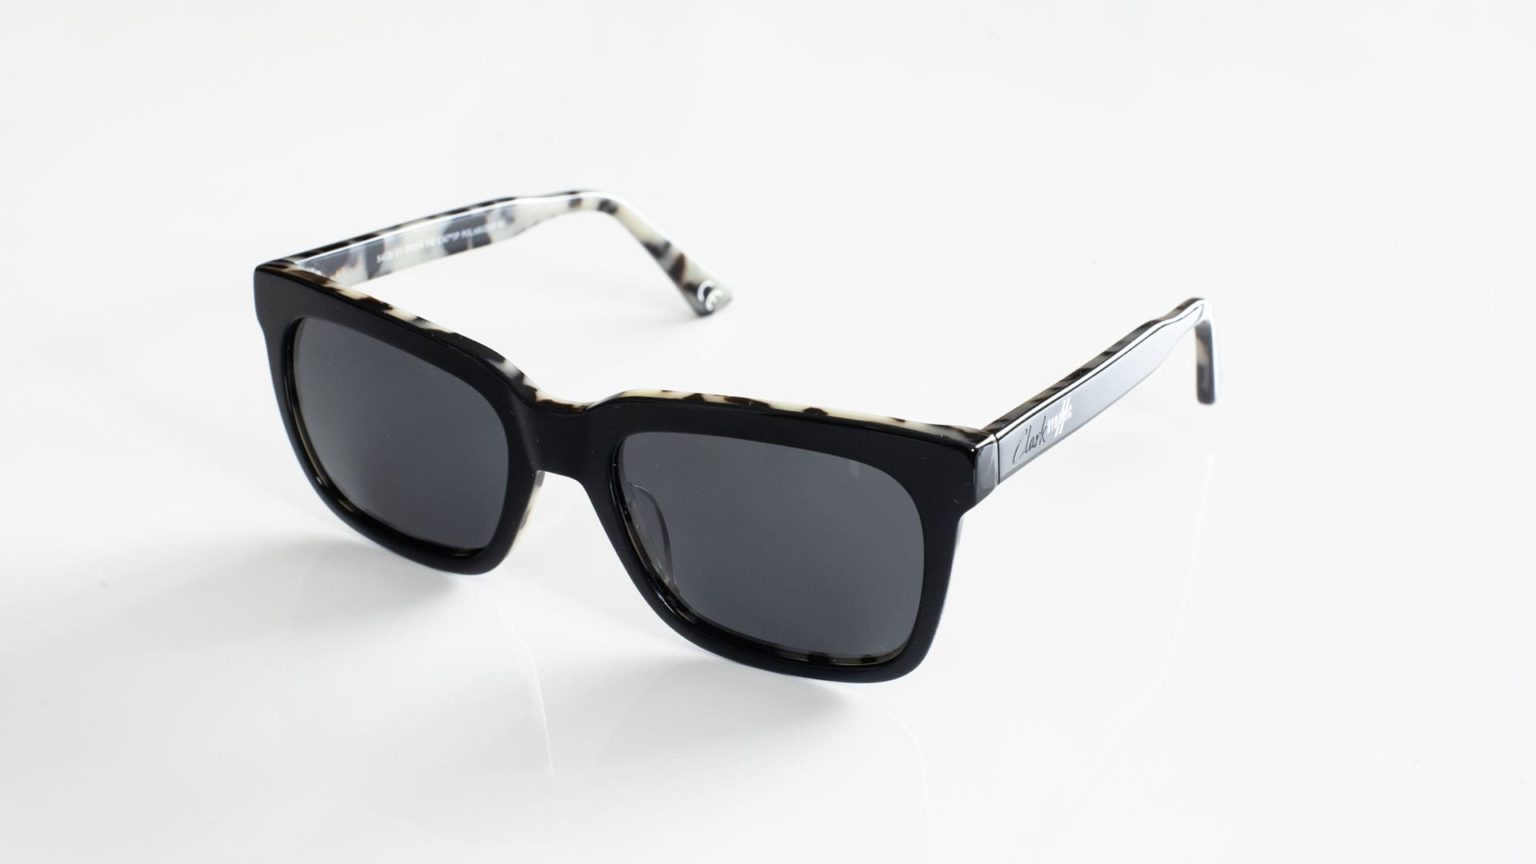 Pair of black sunglasses woman model VPF1